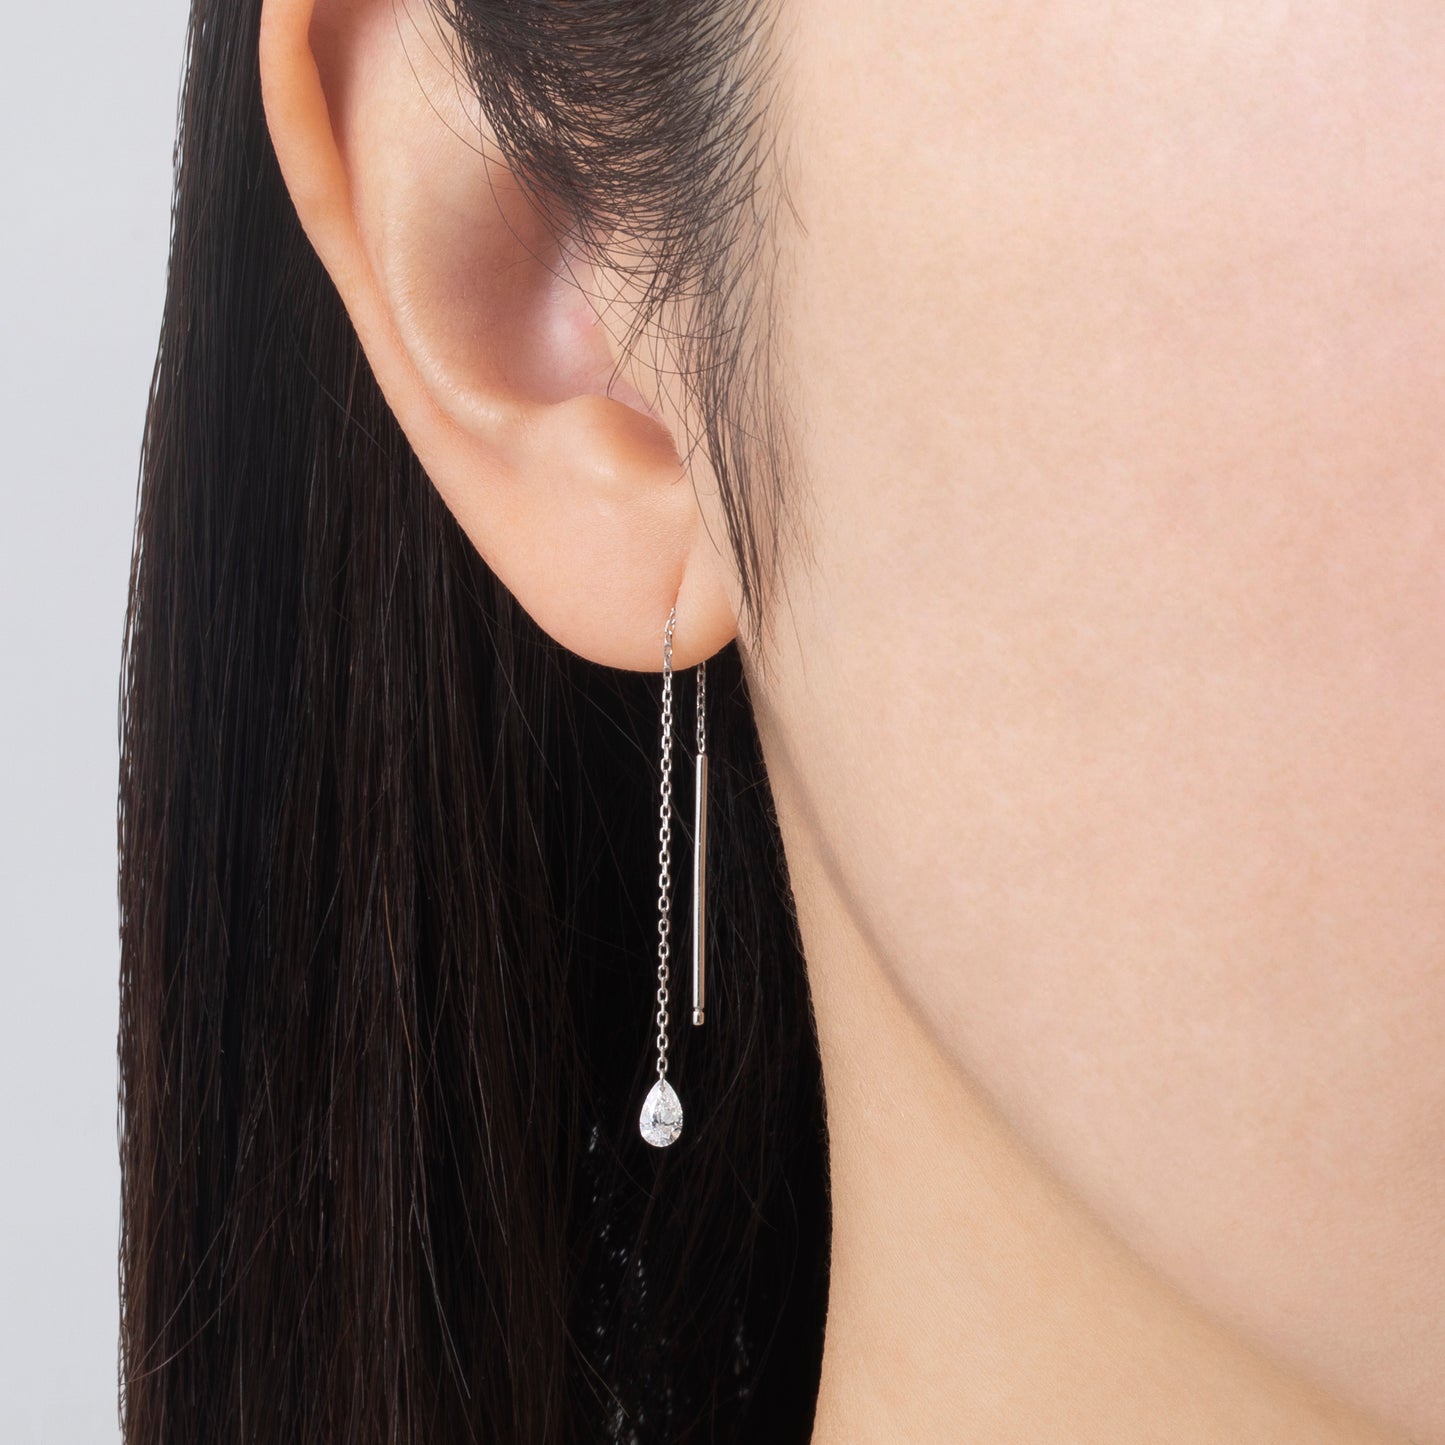 INNOCENCE Pair Shape Chain Earrings / PT850 / PT900 Platinum / 0.15 Carat x 2 pieces